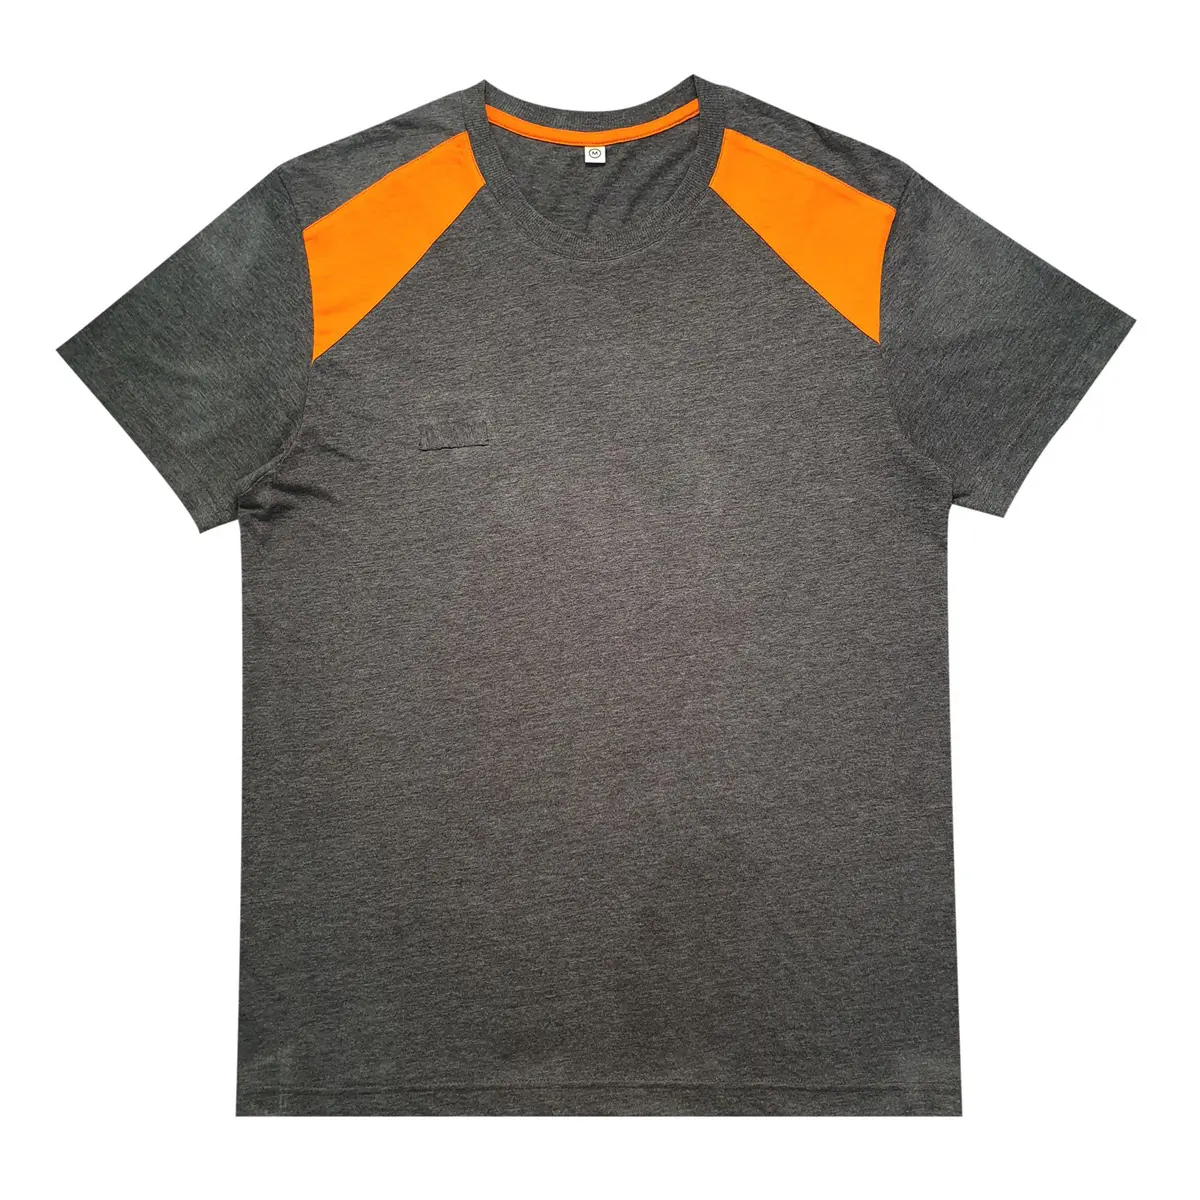 เสื้อยืดแฟชั่นสำหรับผู้ชายเสื้อผ้าสำหรับผู้ใหญ่ที่เชื่อถือได้ผู้ผลิตผ้าฝ้าย100% สีดำและสีส้มแขนสั้น